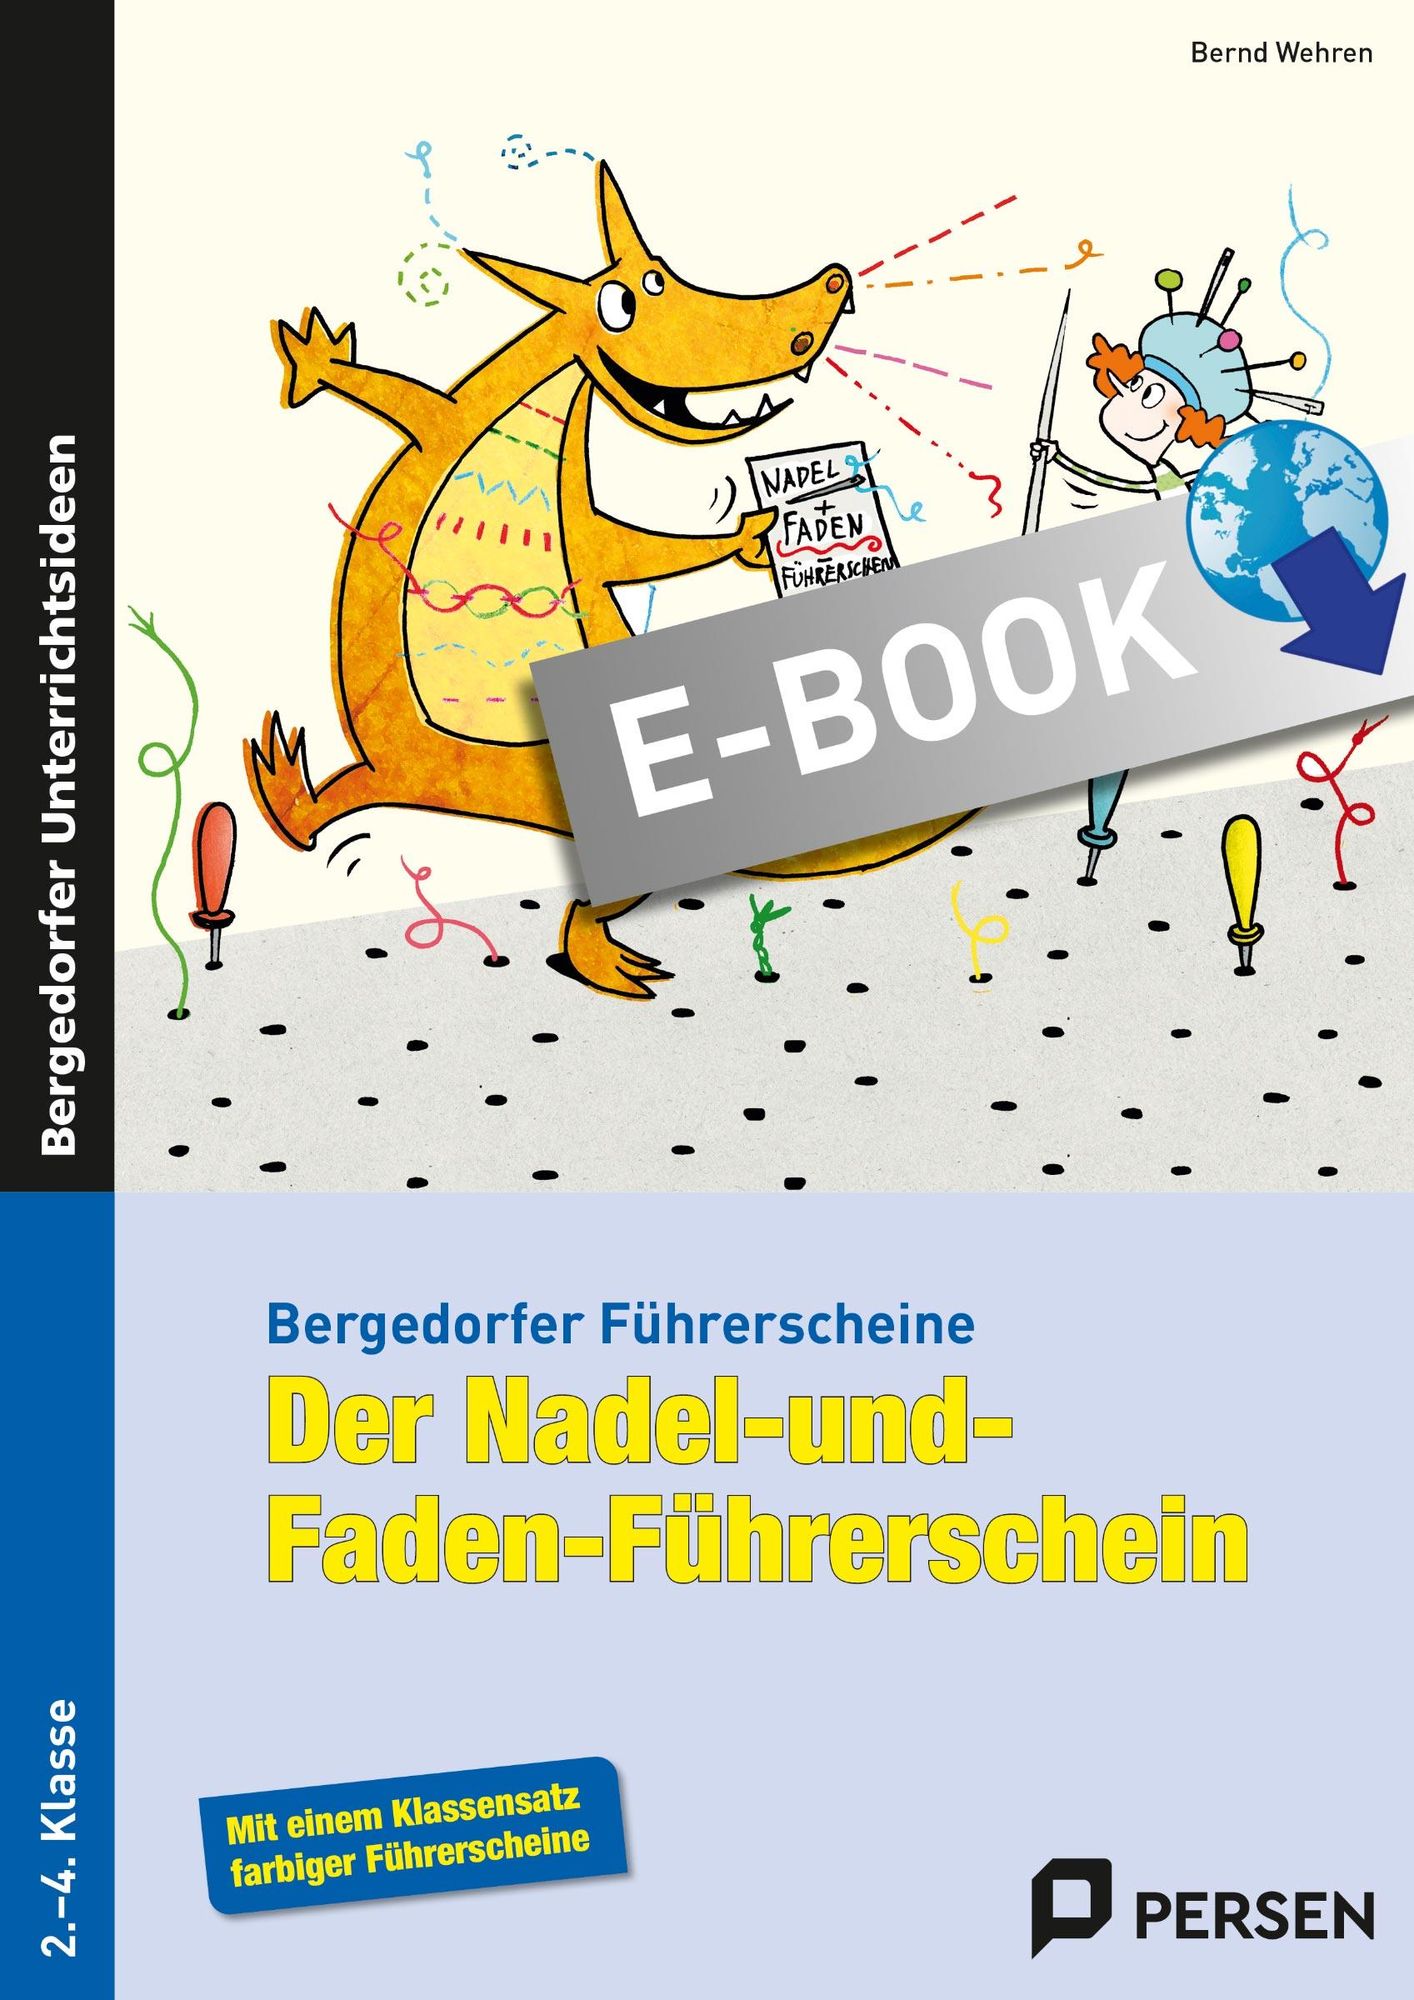 Der Nadel-und-Faden-Führerschein' von 'Bernd Wehren' - eBook